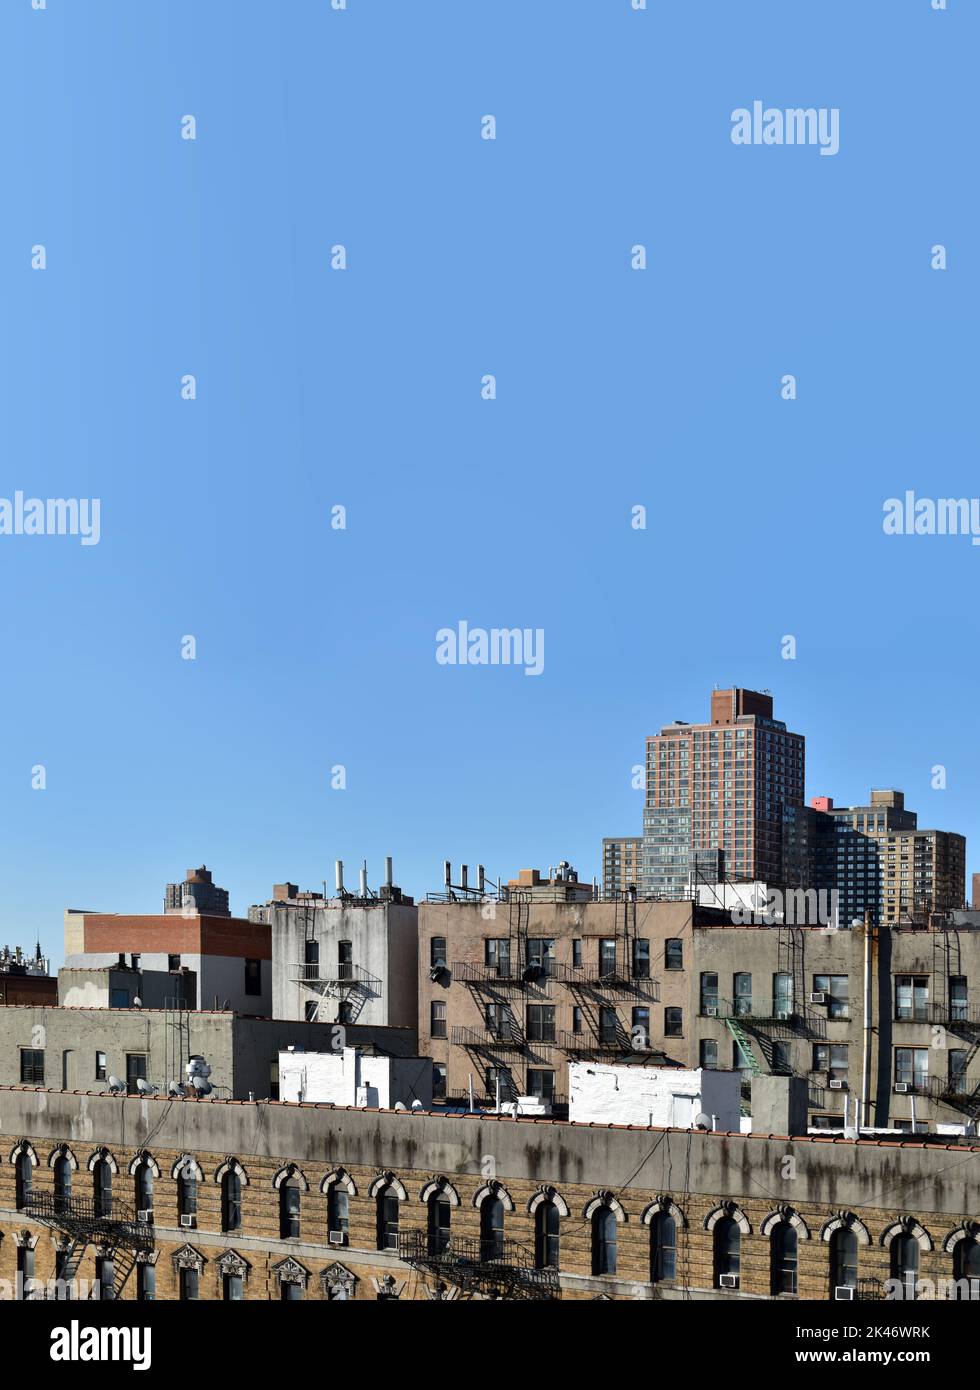 parte superior este de los edificios de la ciudad de harlem de nueva york Foto de stock